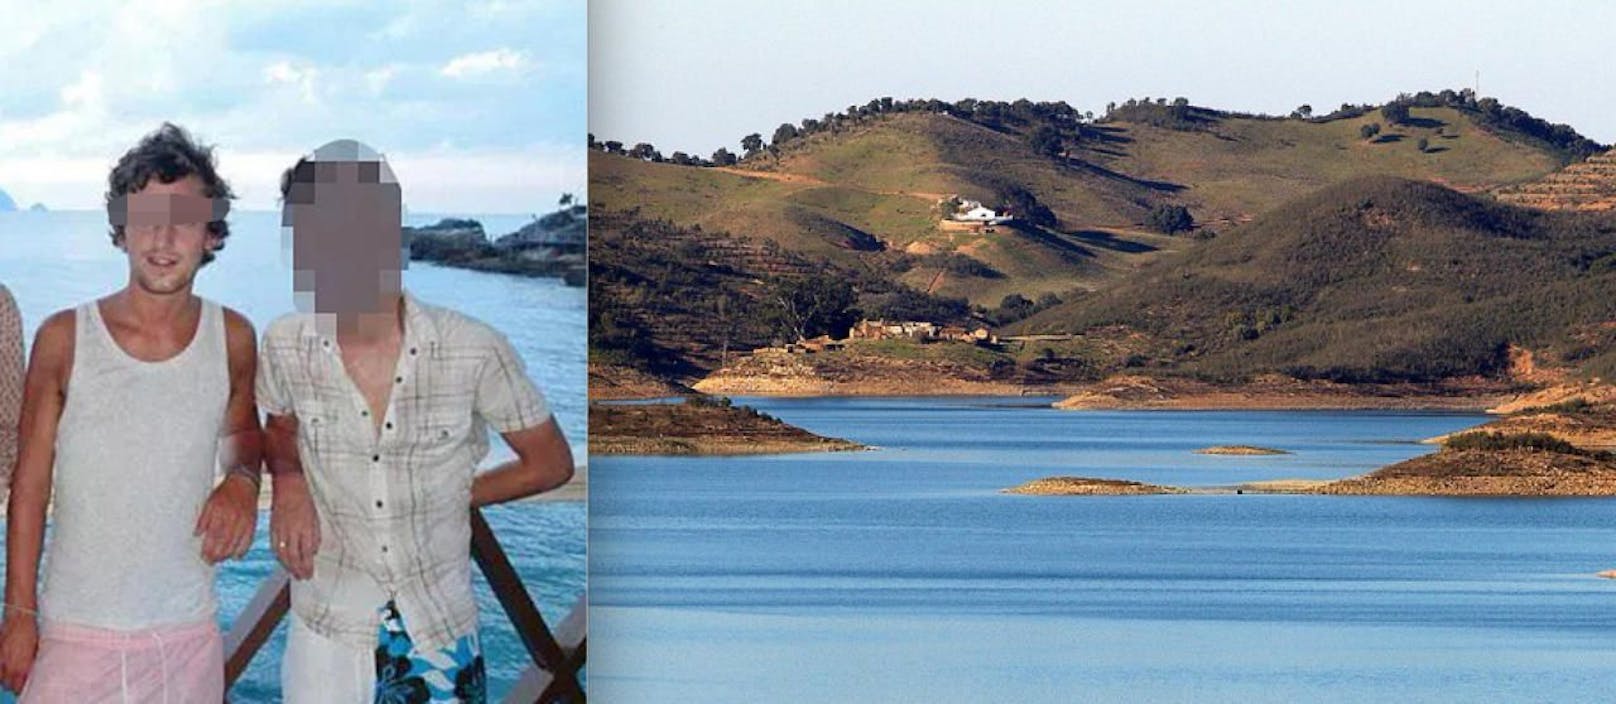 Richard C. (29, li.) ging am Stausee Santa Clara in Portugal unter und wird seitdem vermisst. 